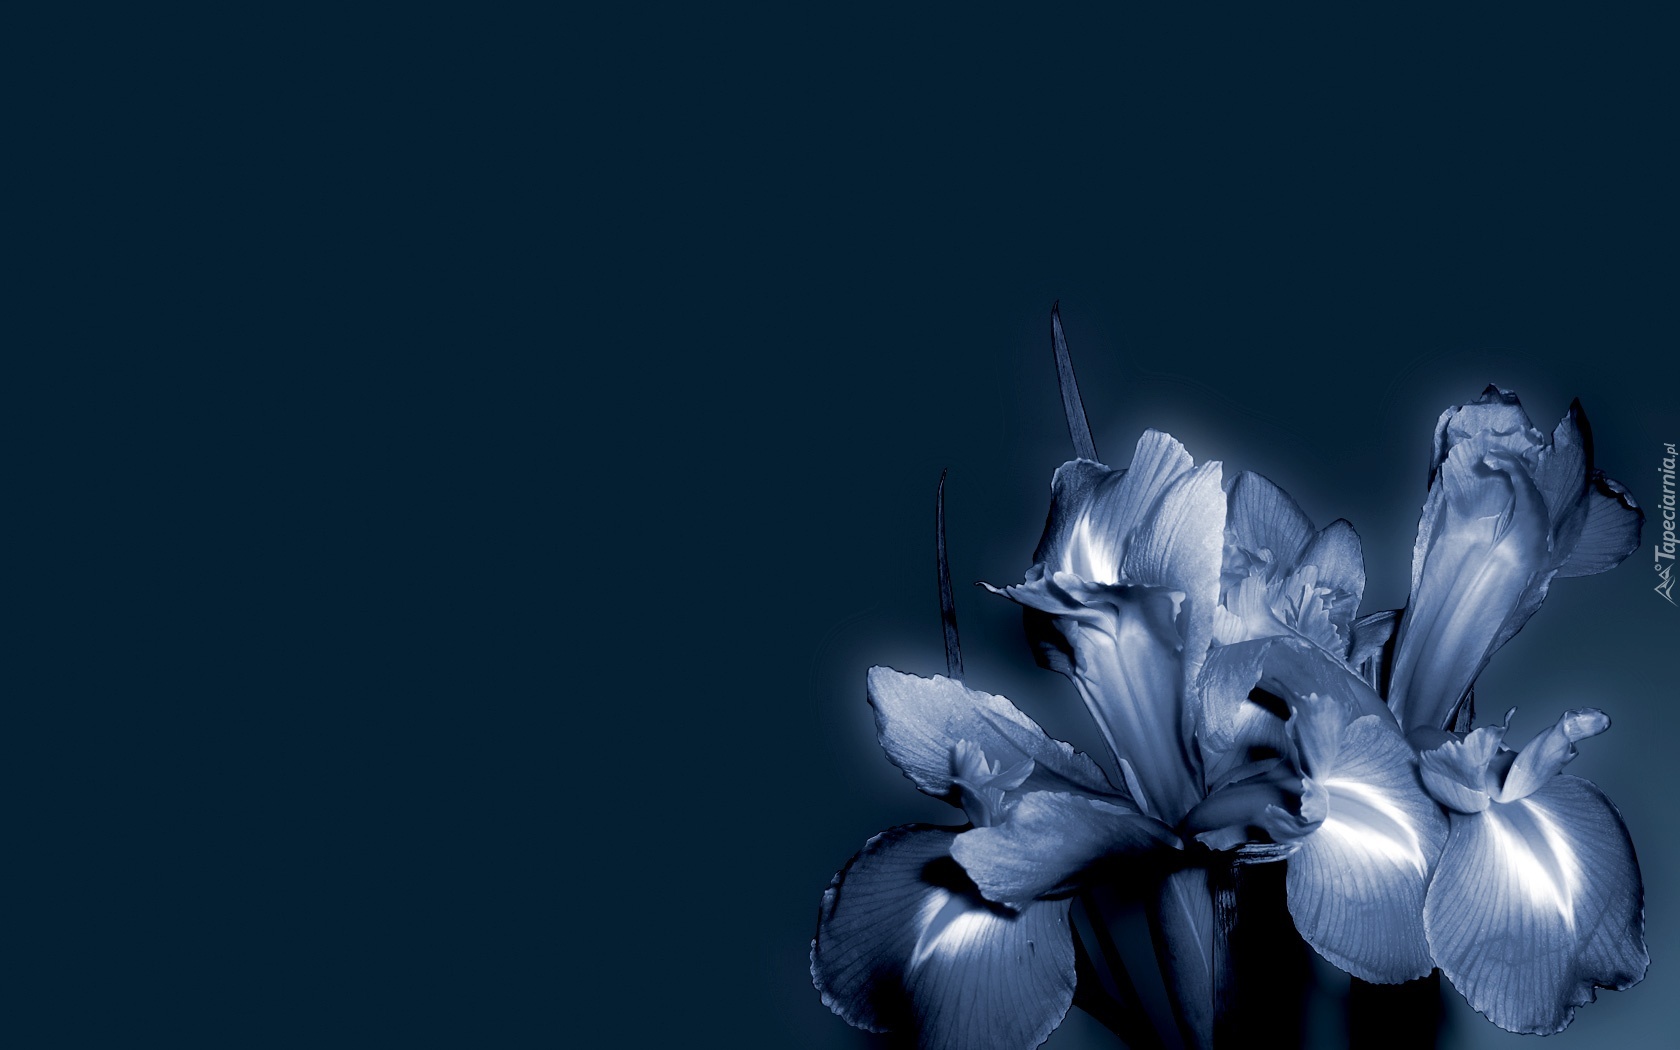 Kwiaty, Niebieskie, Tło